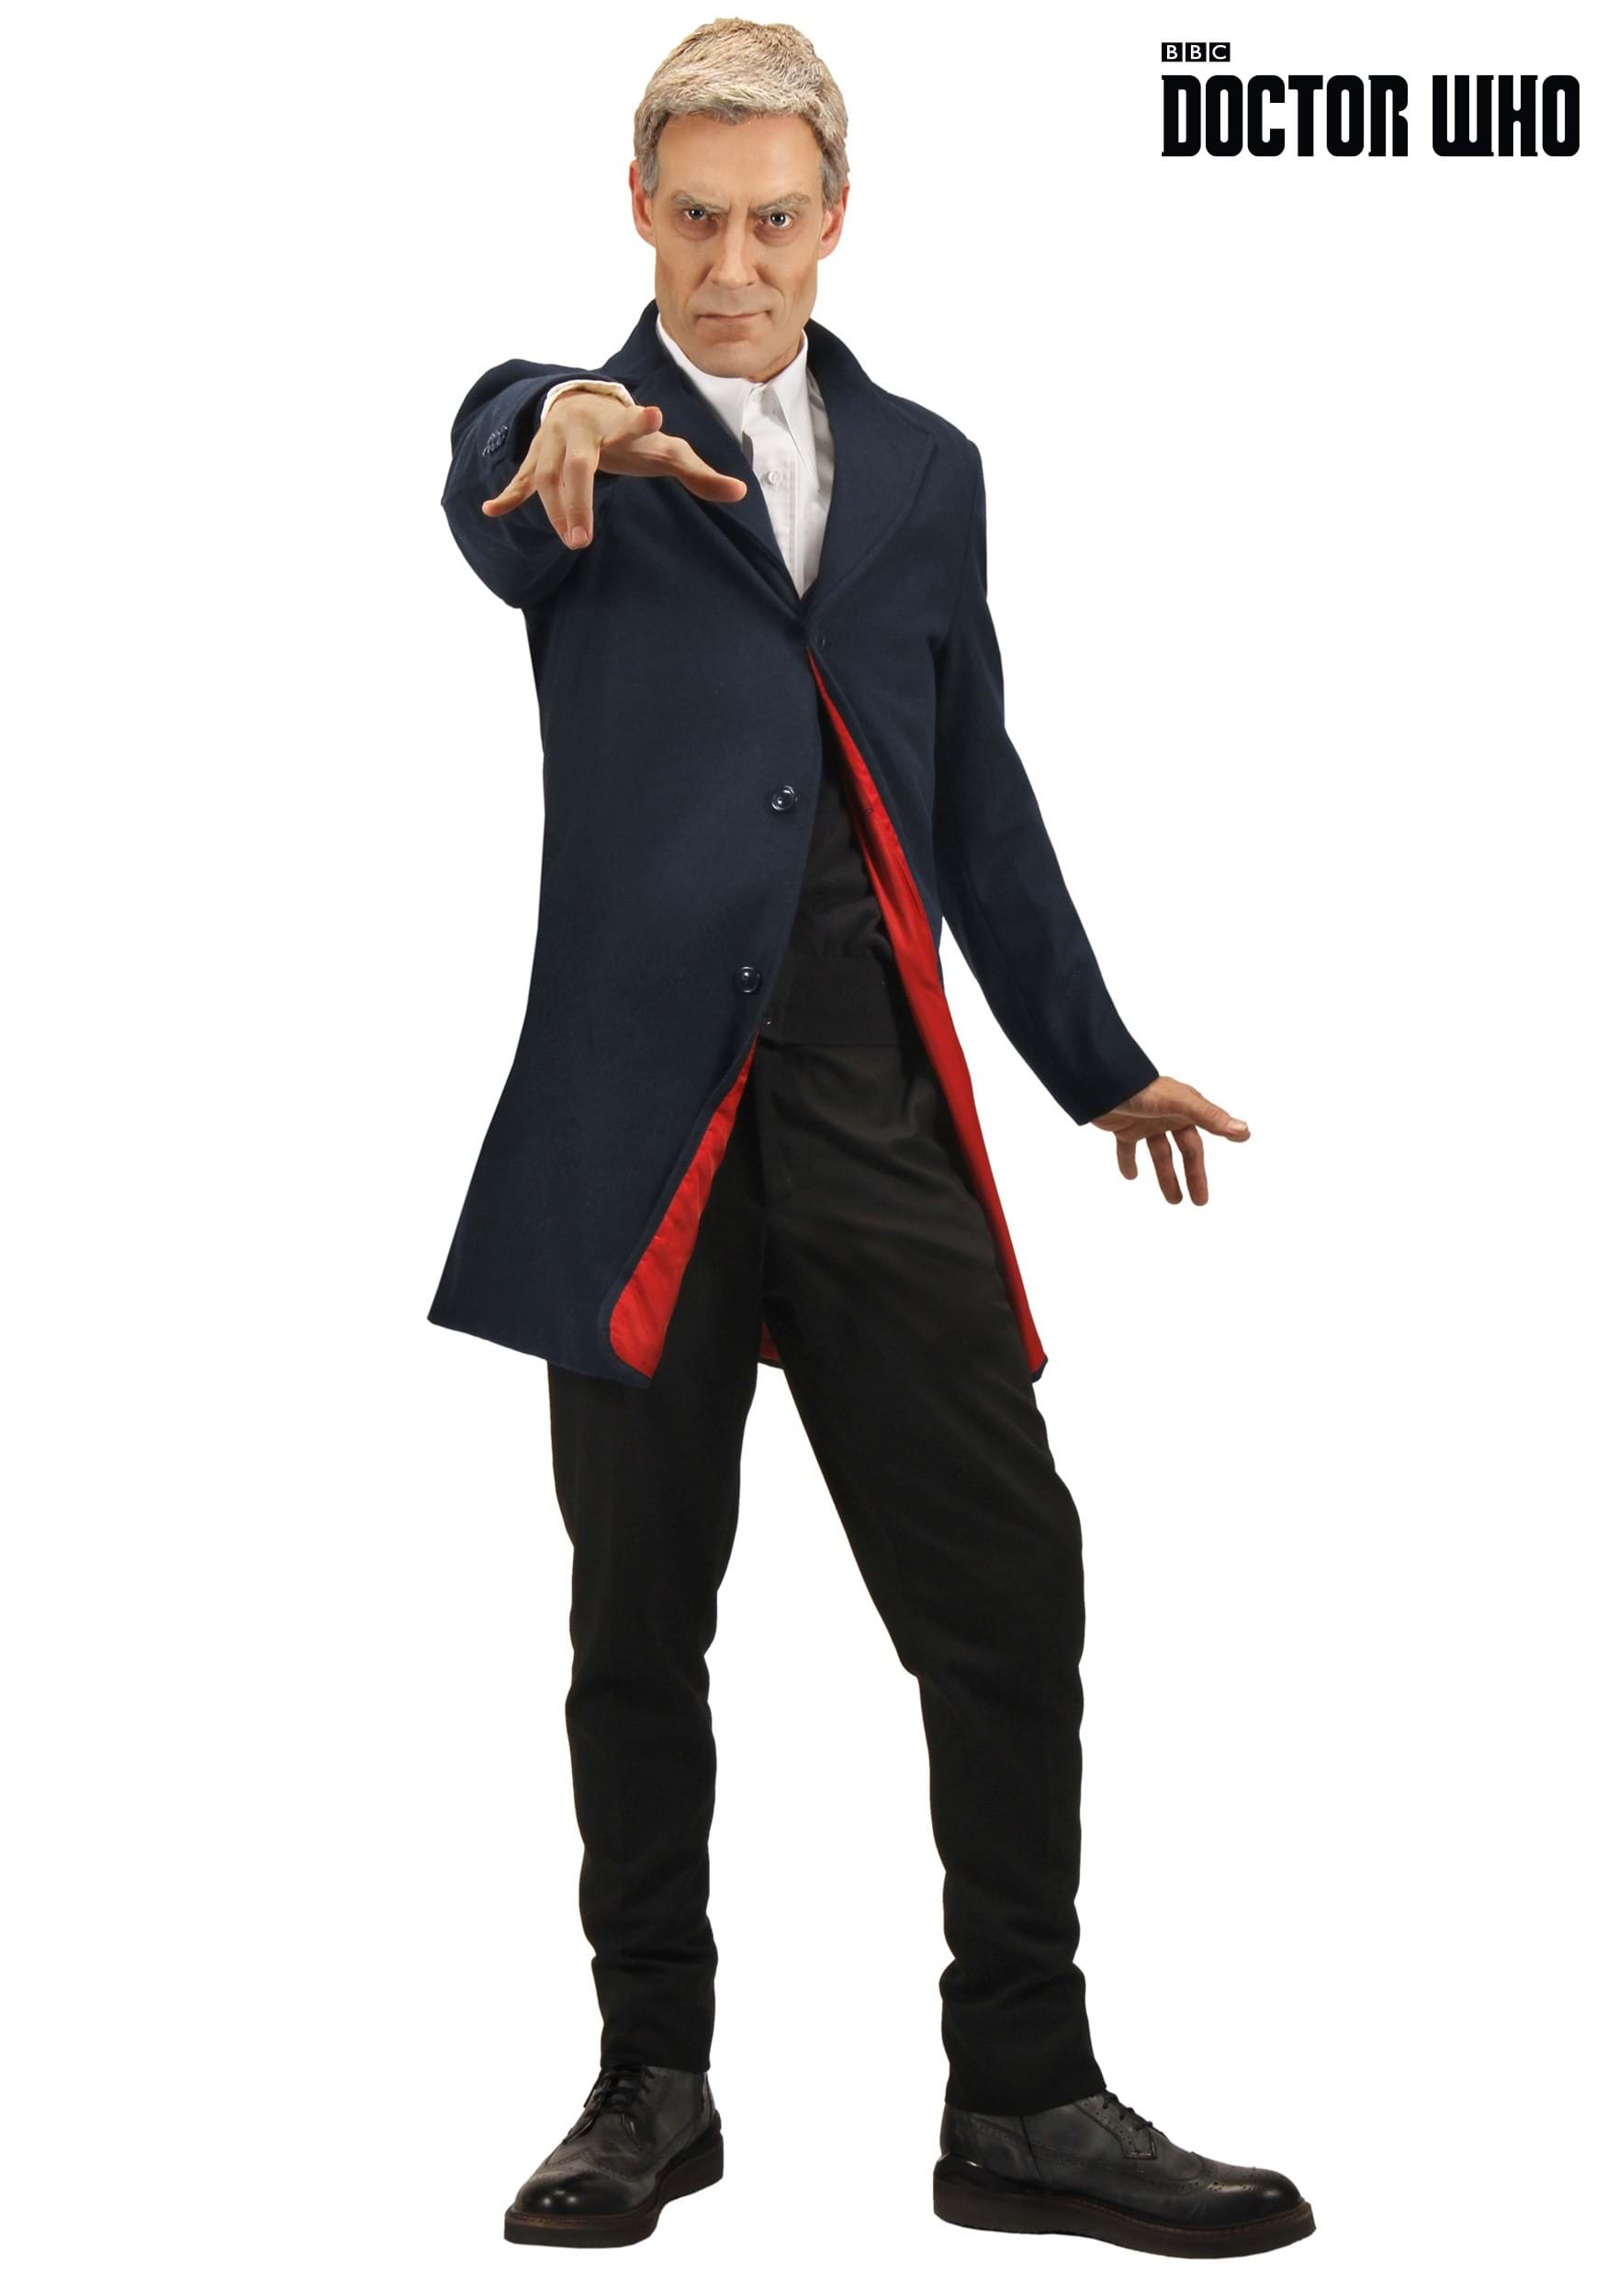 Twelfth Doctor Men's Costume Jacket